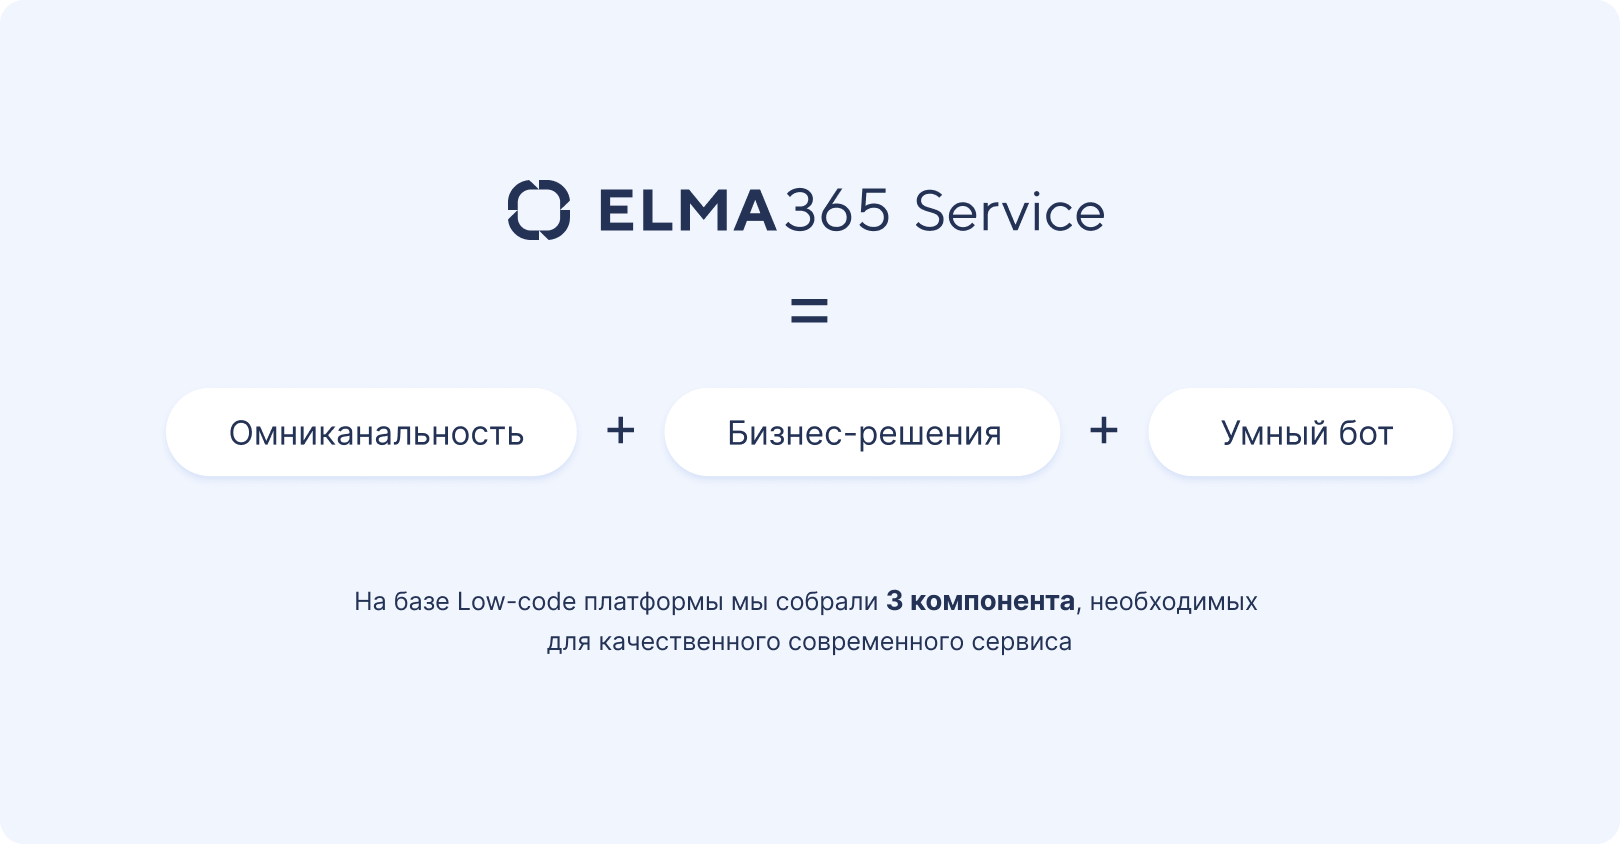 Инструменты для организации сервисного центра ELMA365 Service